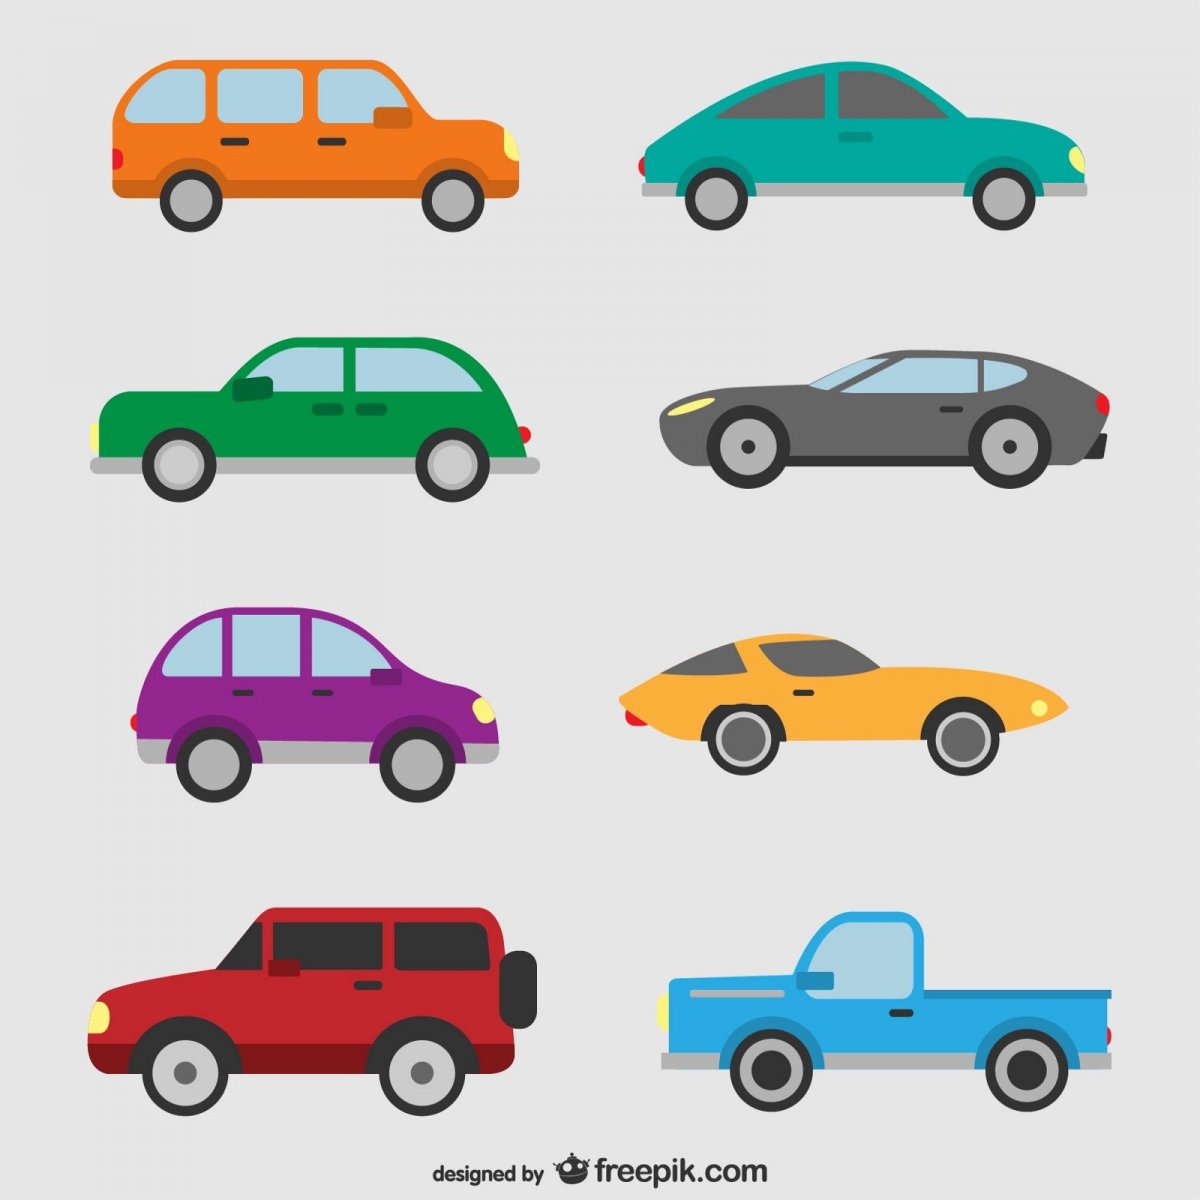 Типы кузова автомобилей иконки